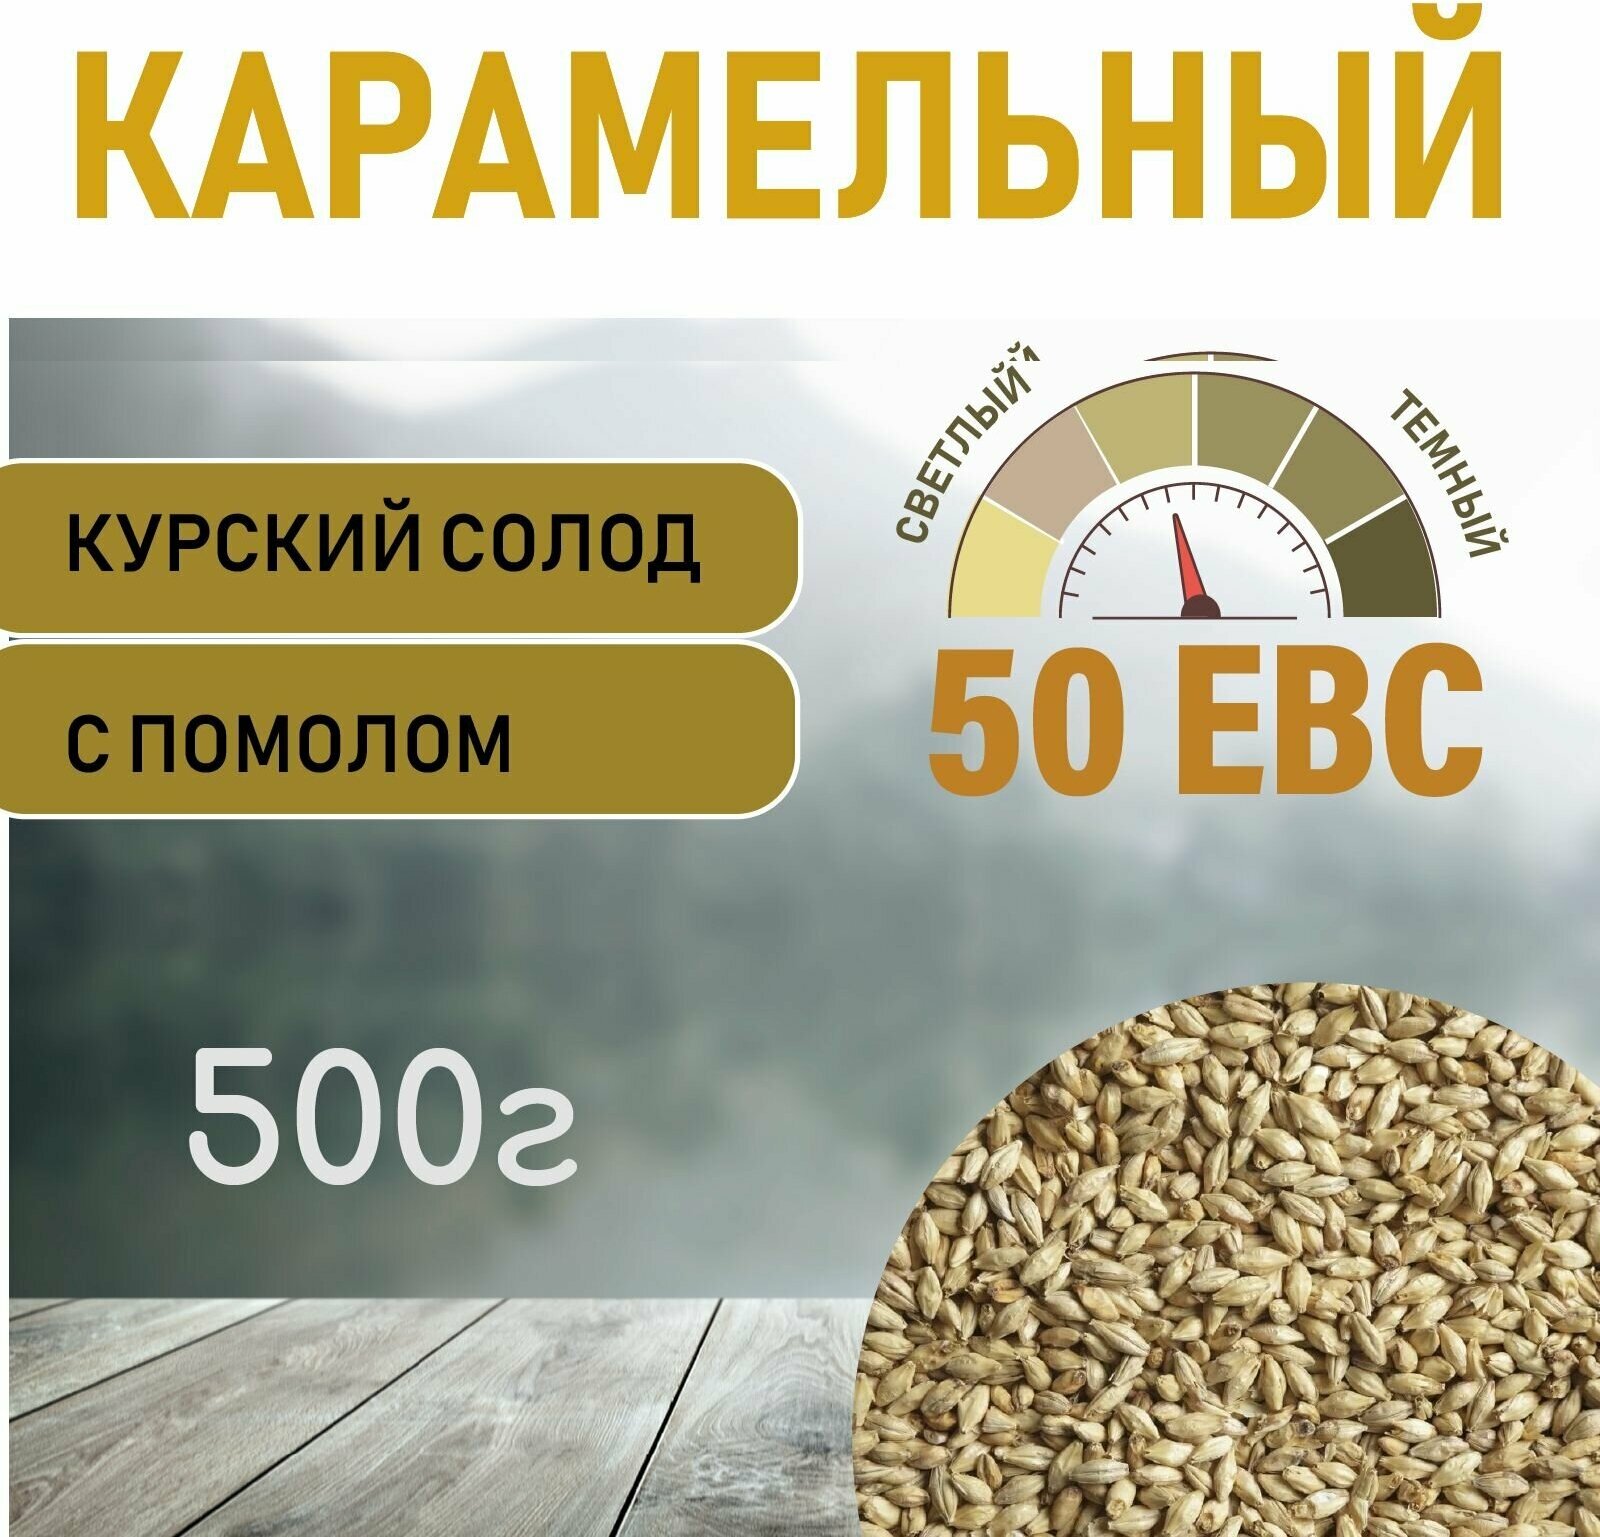 Солод ячменный карамельный EBS 50 (Курский солод) 500гр. с Помолом